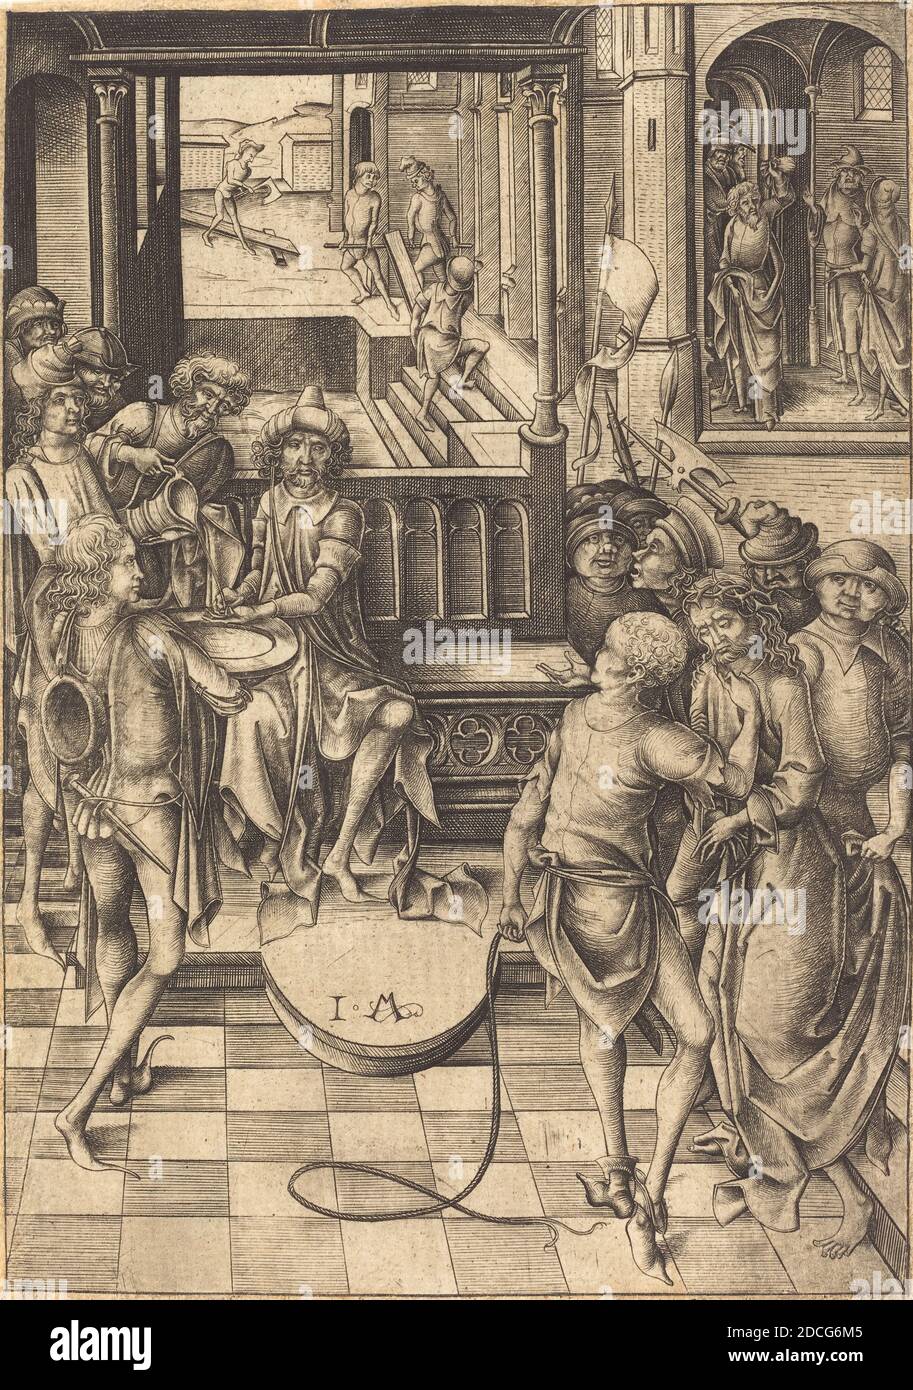 Israhel van Meckenem, (artist), German, c. 1445 - 1503, Christ before Pilate, Twelve Scenes of the Pasion, (series), c. 1480, engraving Stock Photo